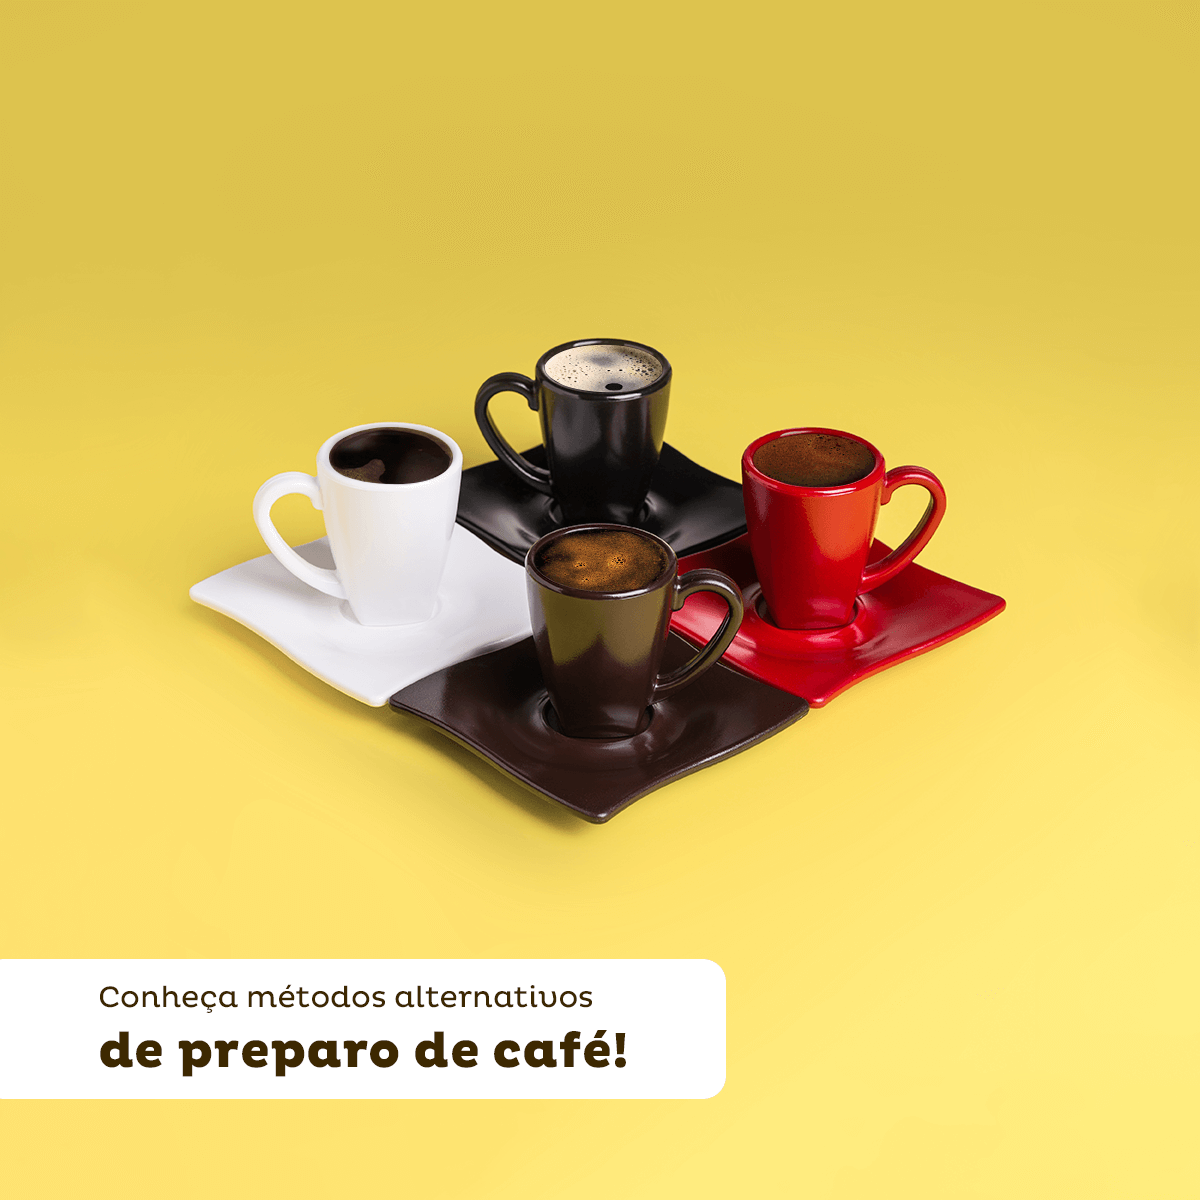 Imagem mostra quatro xícaras cheias de café, nas cores preta, branca, marrom e vermelha. E a frase conheça métodos de preparo de café.